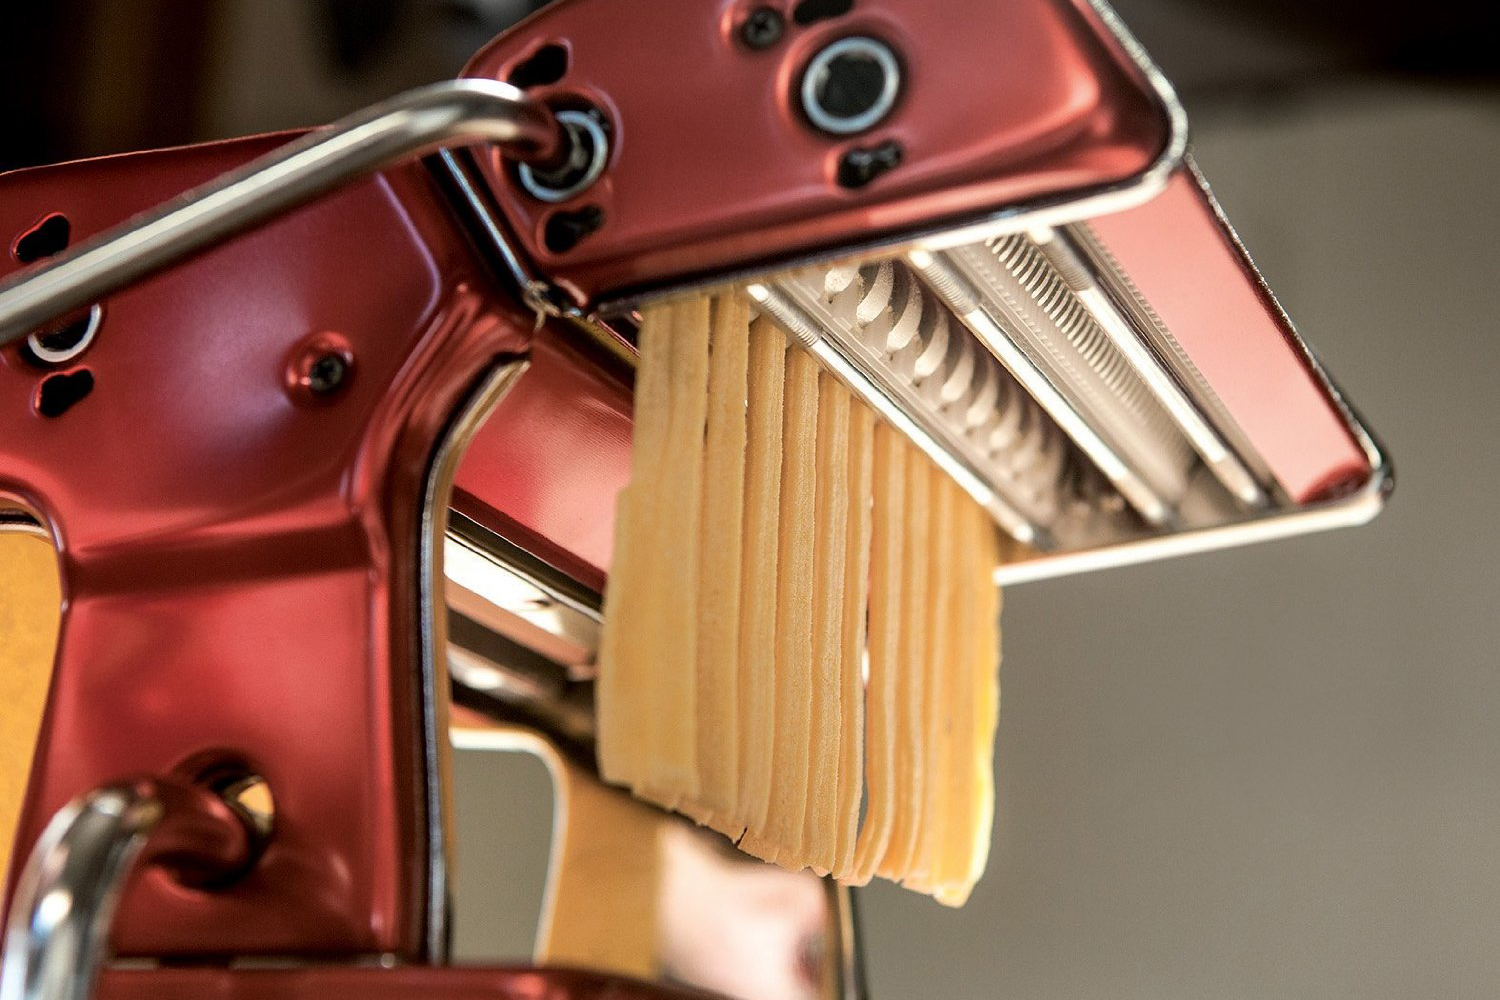 CucinaPro Pappardelle IMPERIA Pasta Machine Attachment for sale